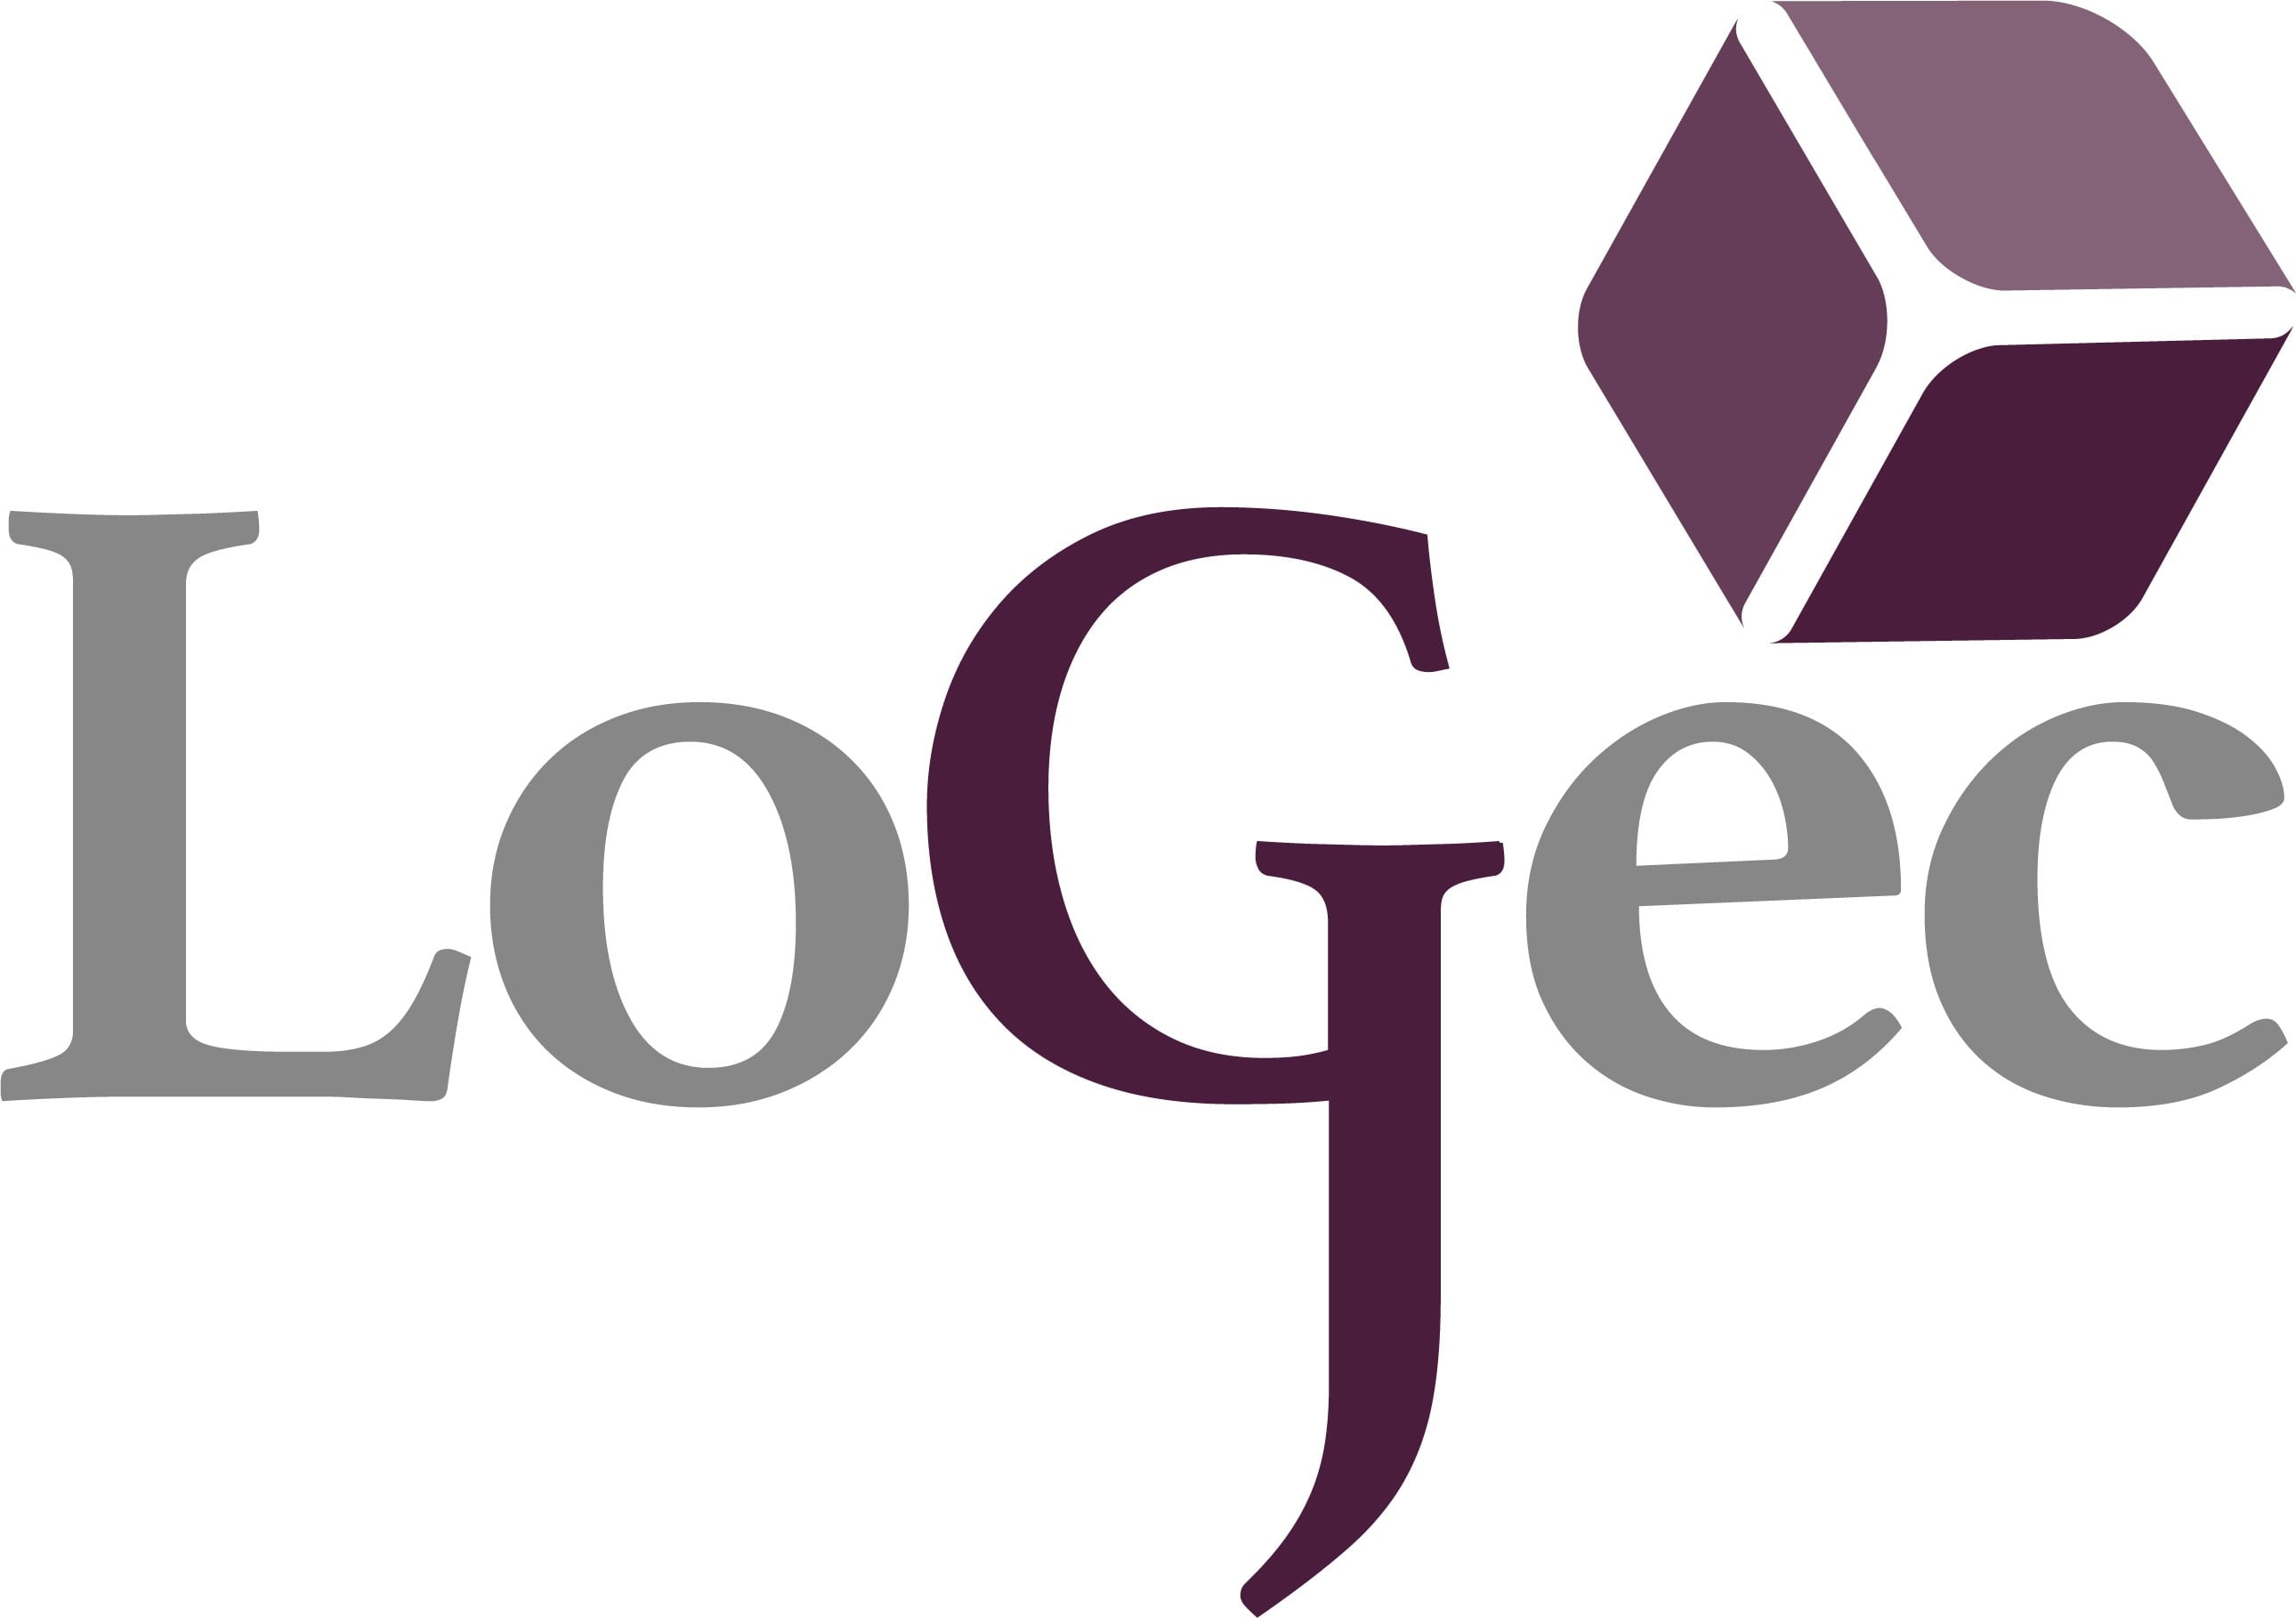 LogJec Recruitment Ltd